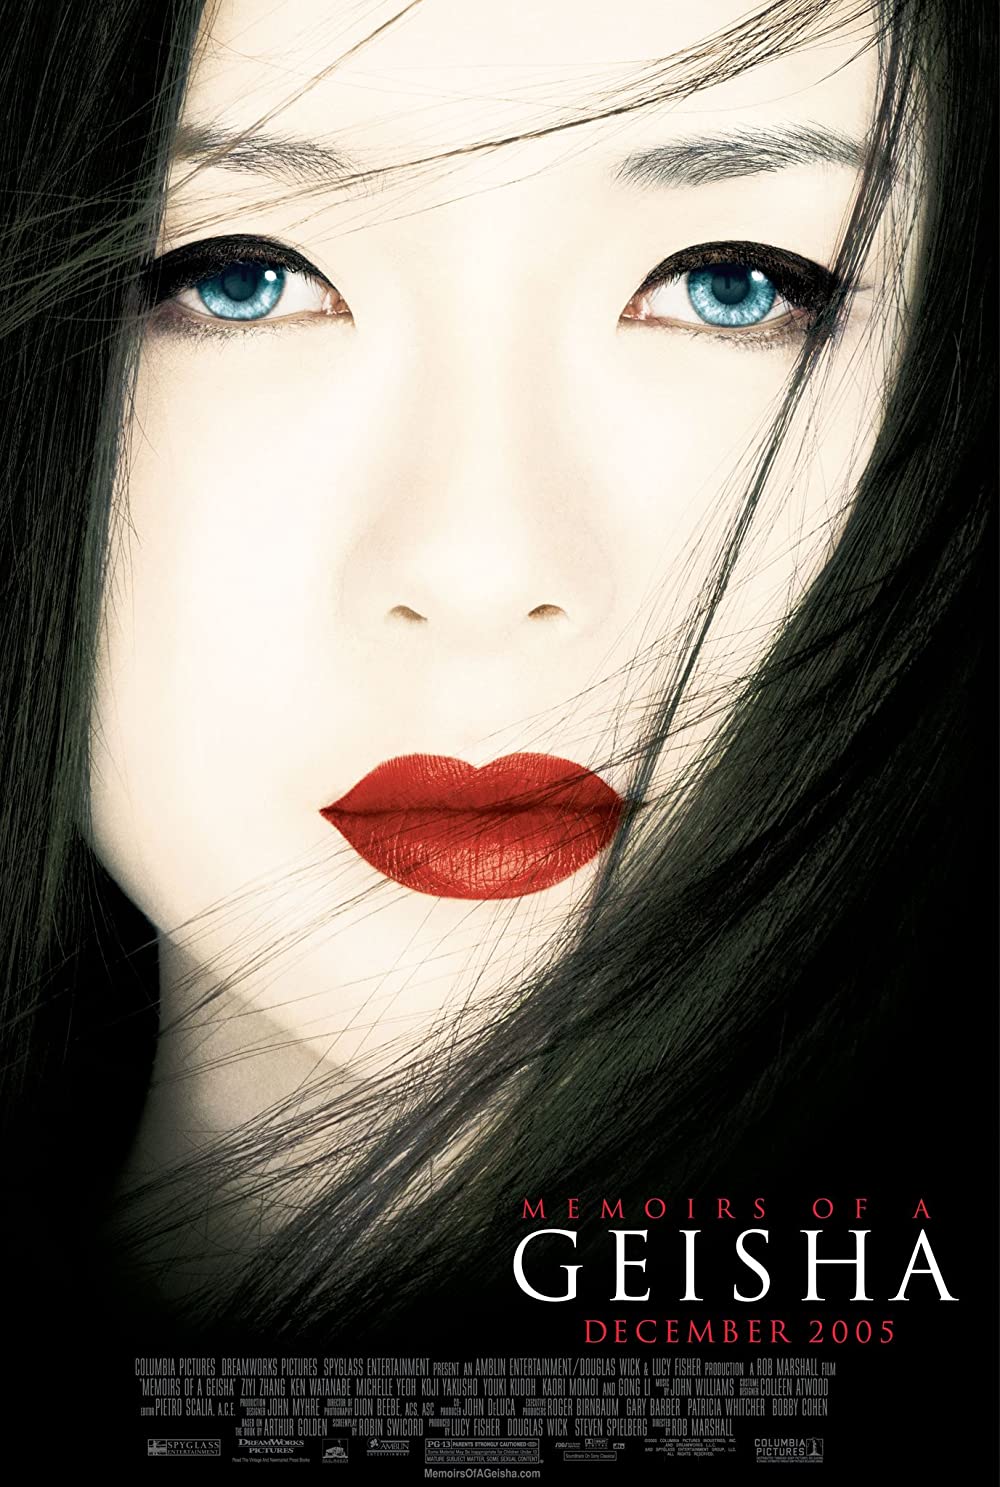 Filmbeschreibung zu Memoirs of a Geisha